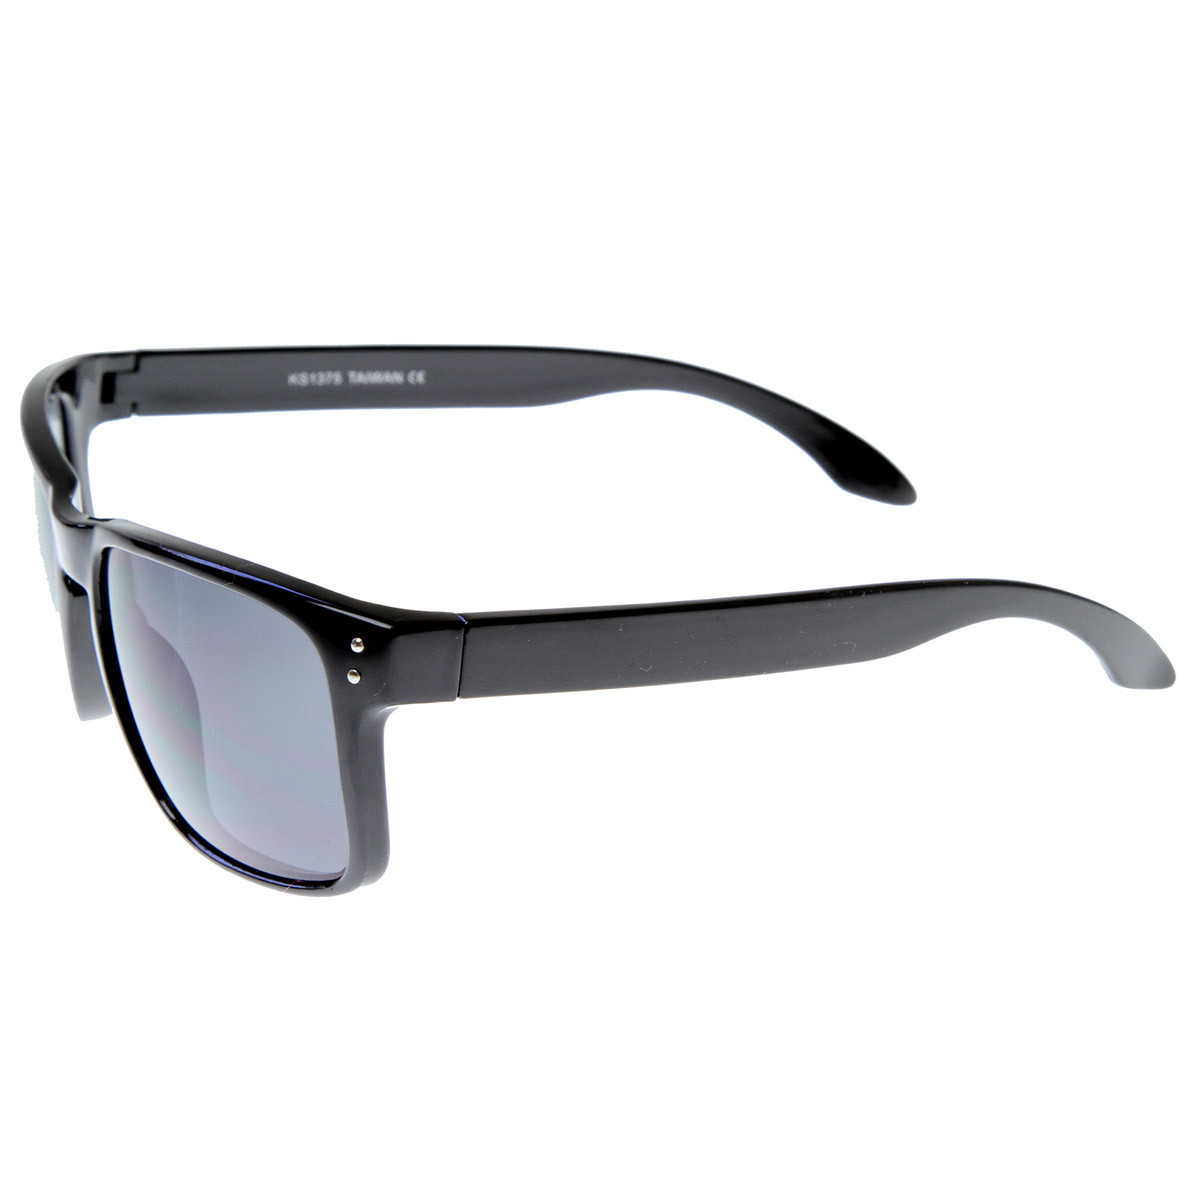 Designer Inspired Active Lifestyle Square Sunglasses With Keyhole Nose Bridge - Shiny Black